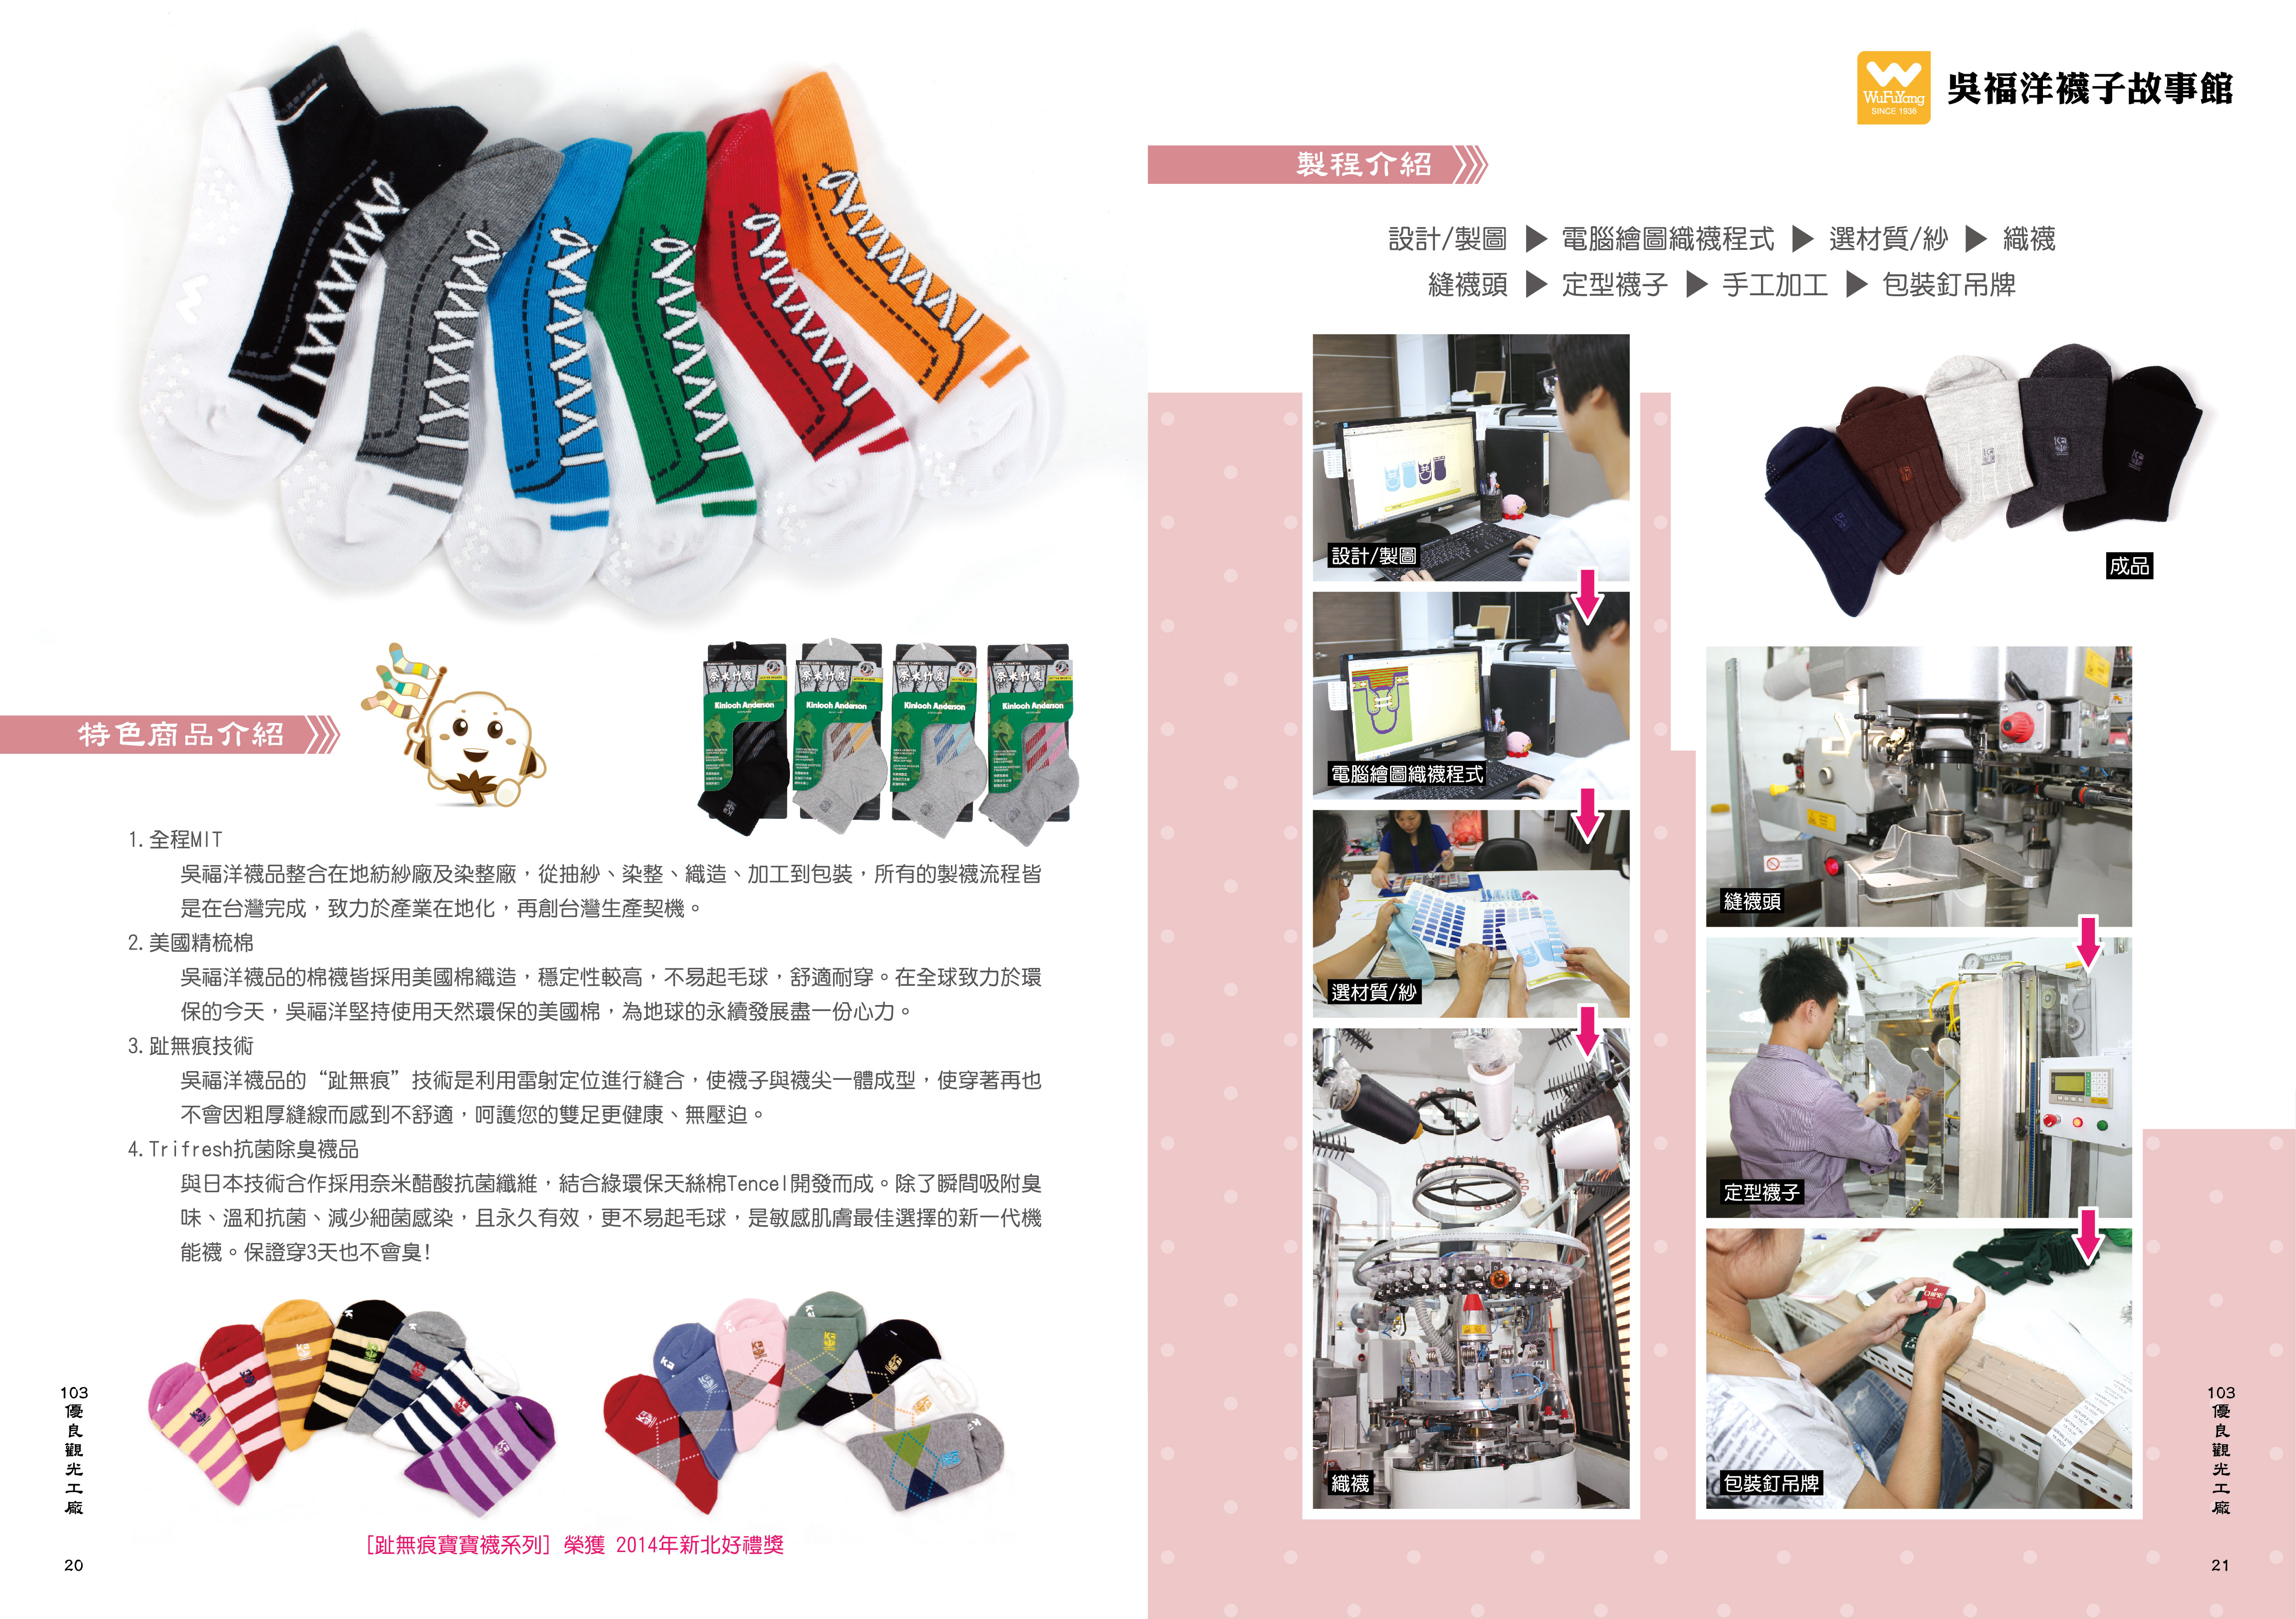 2014年度廠商專訪-吳福洋襪子故事館-特色商品